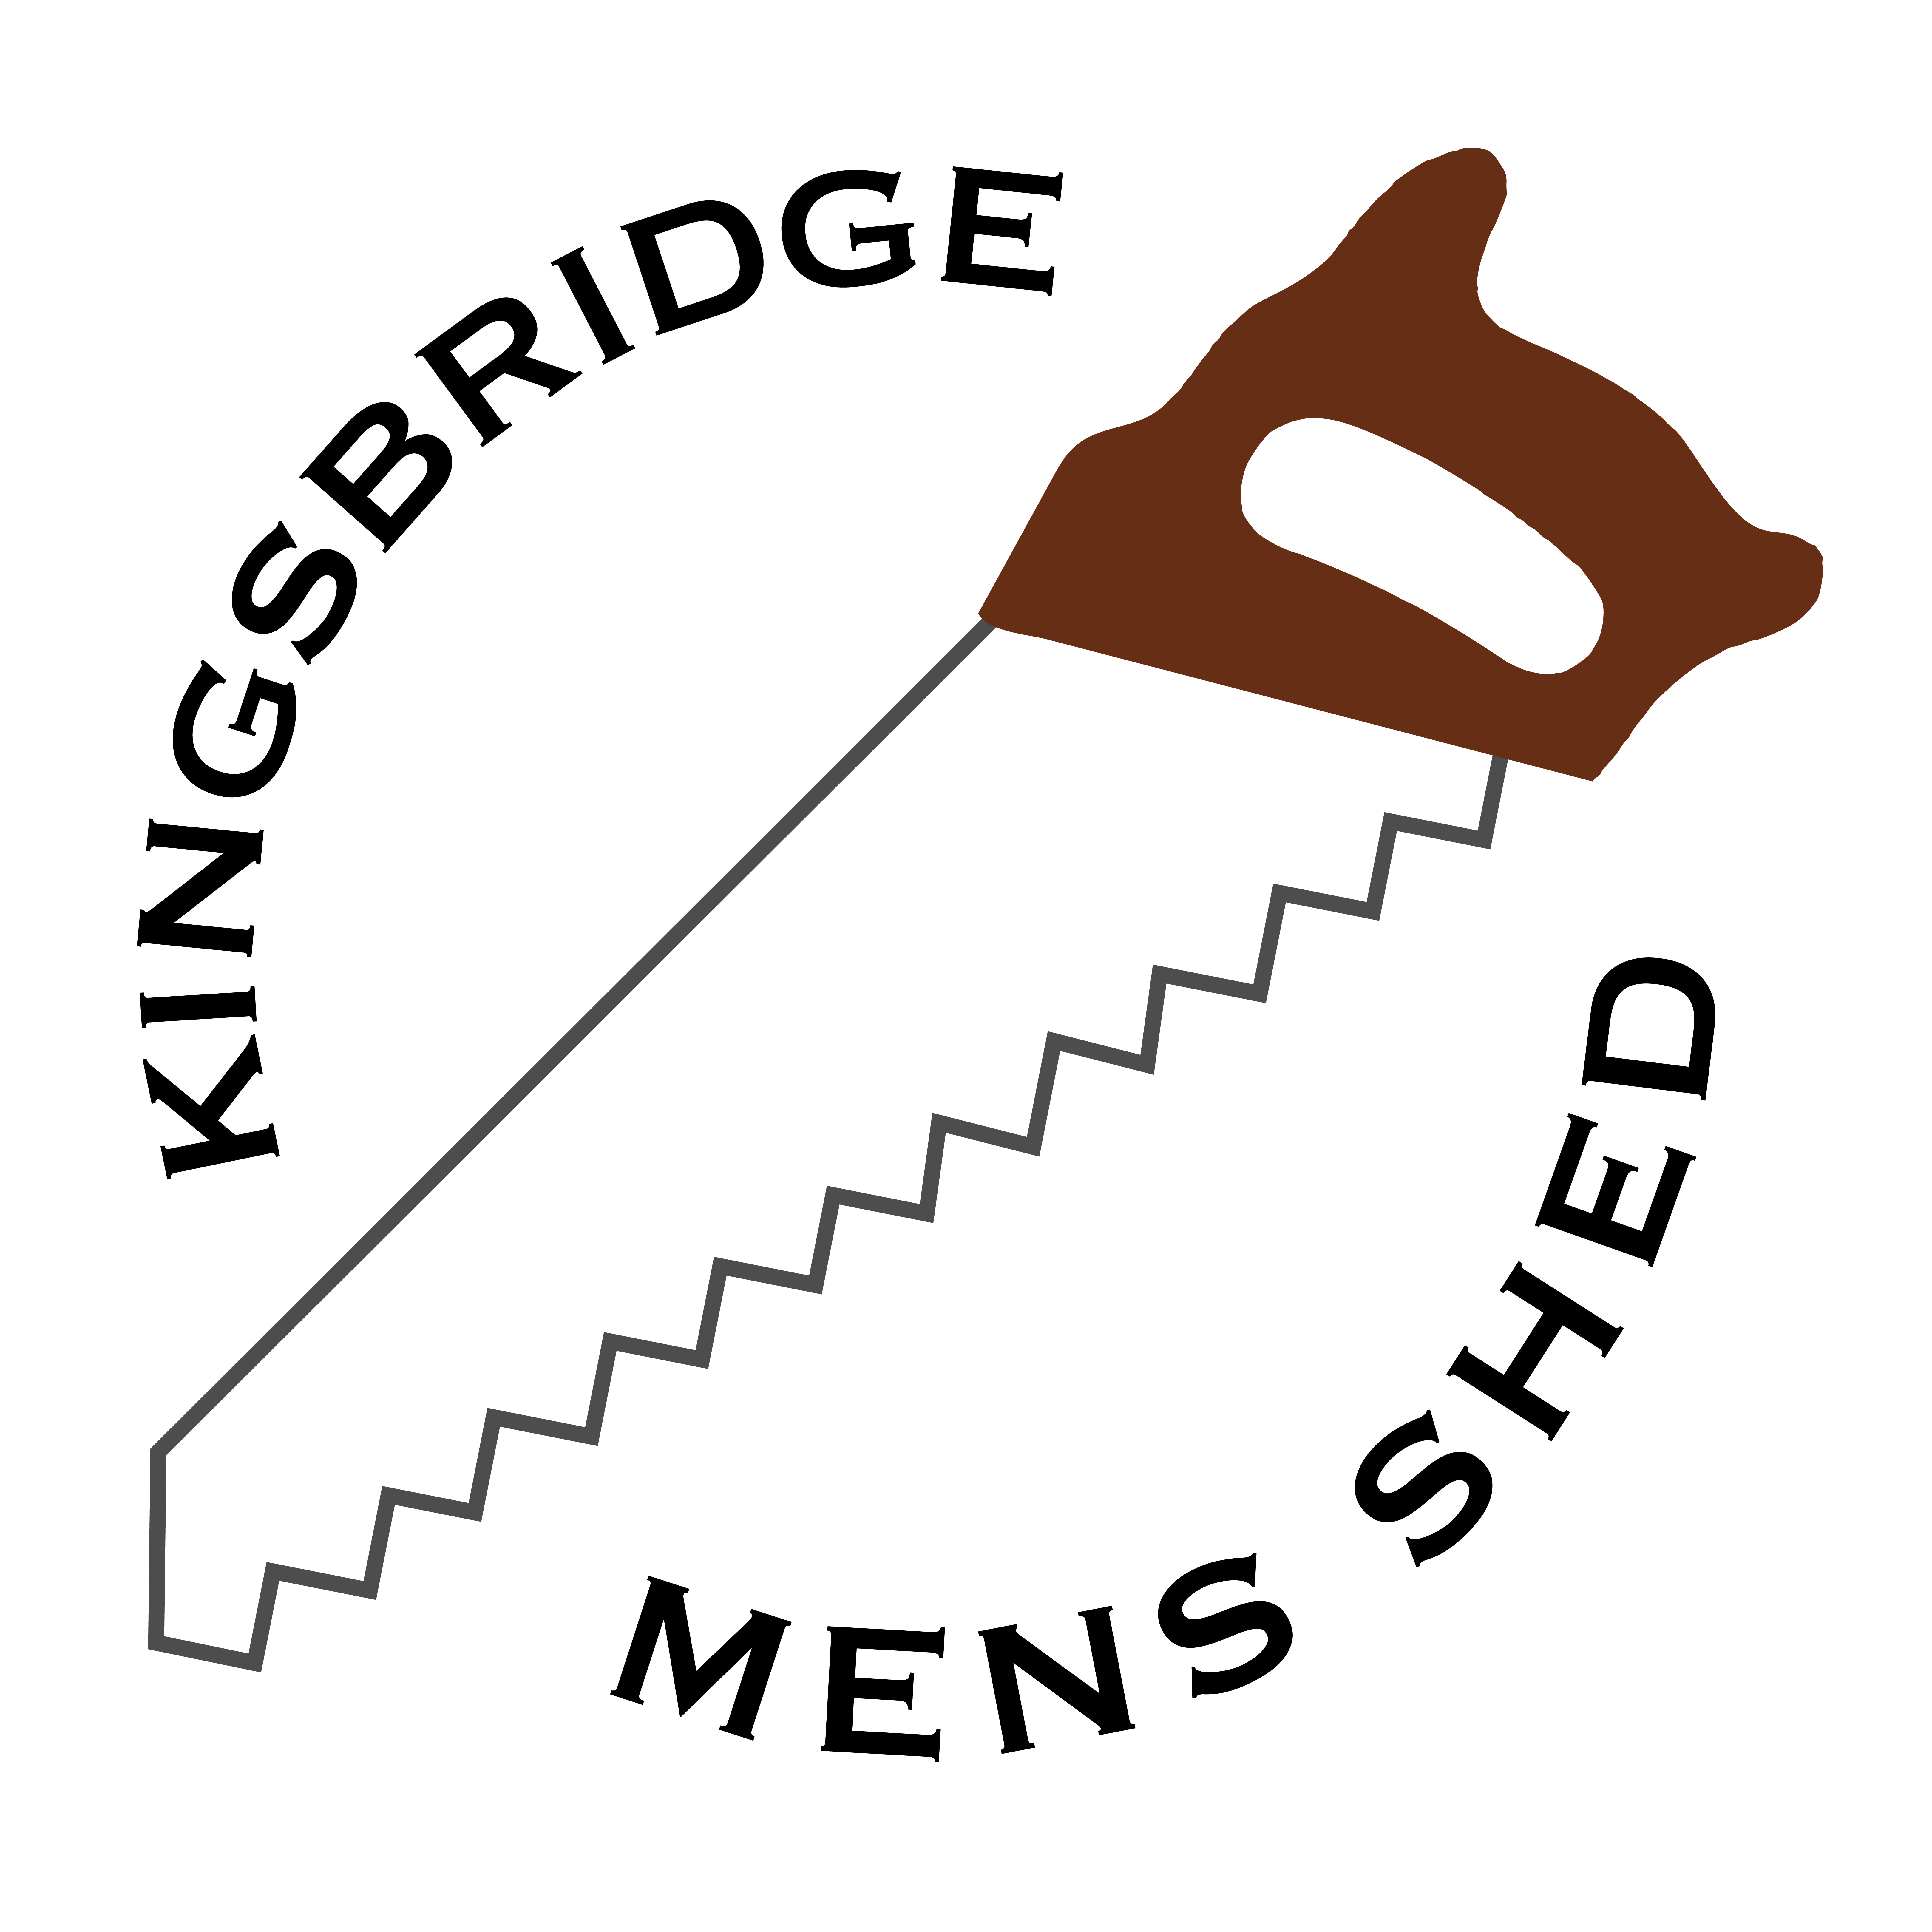 Kingsbridge Men's Shed